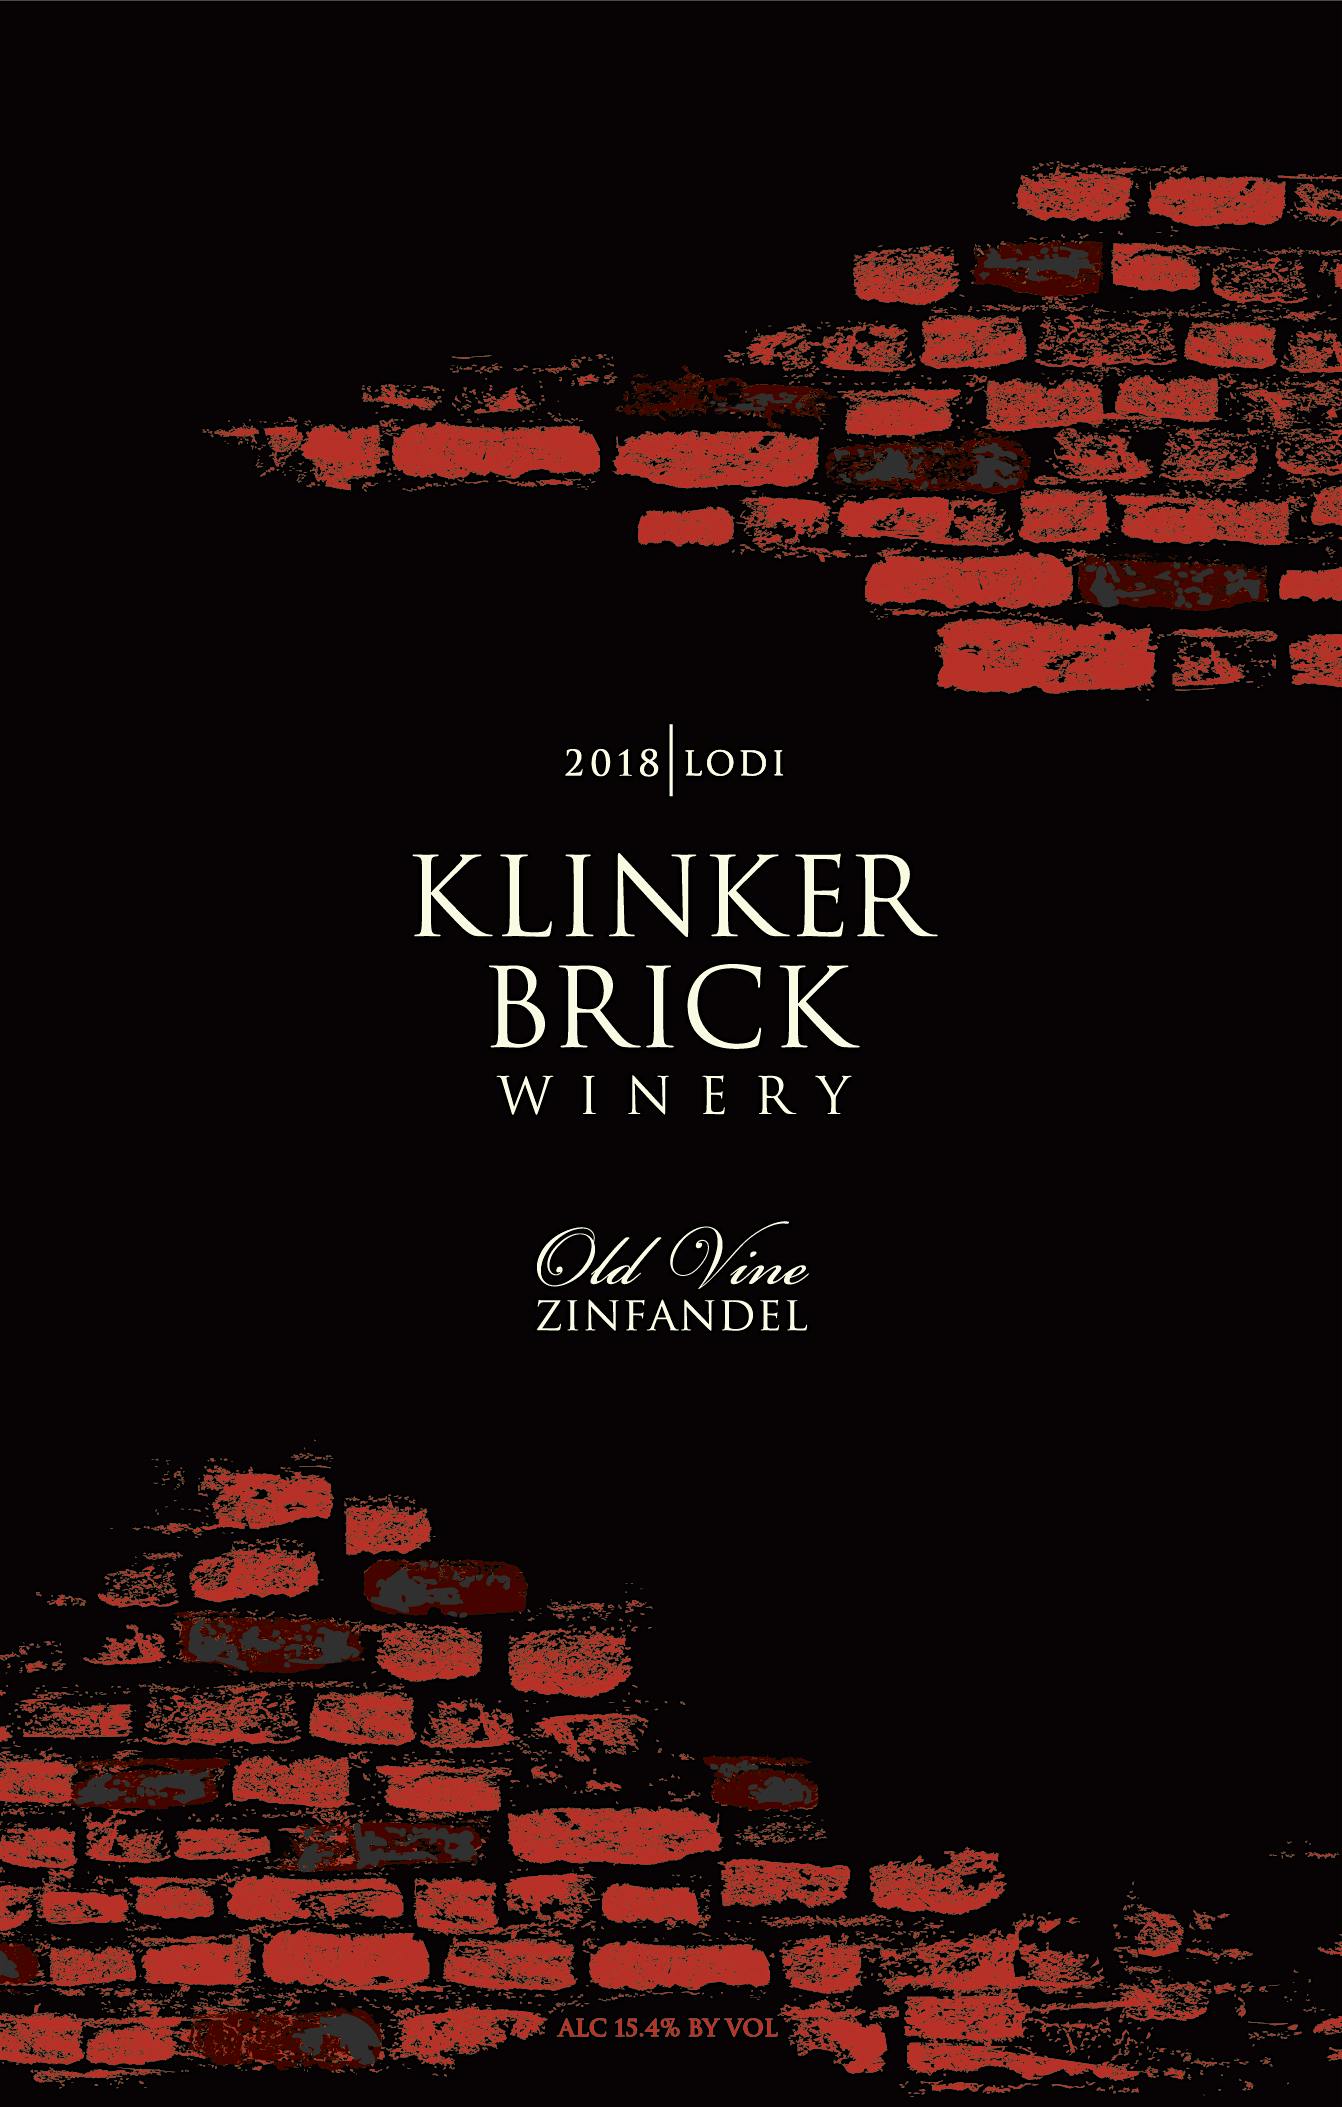 Label for Klinker Brick